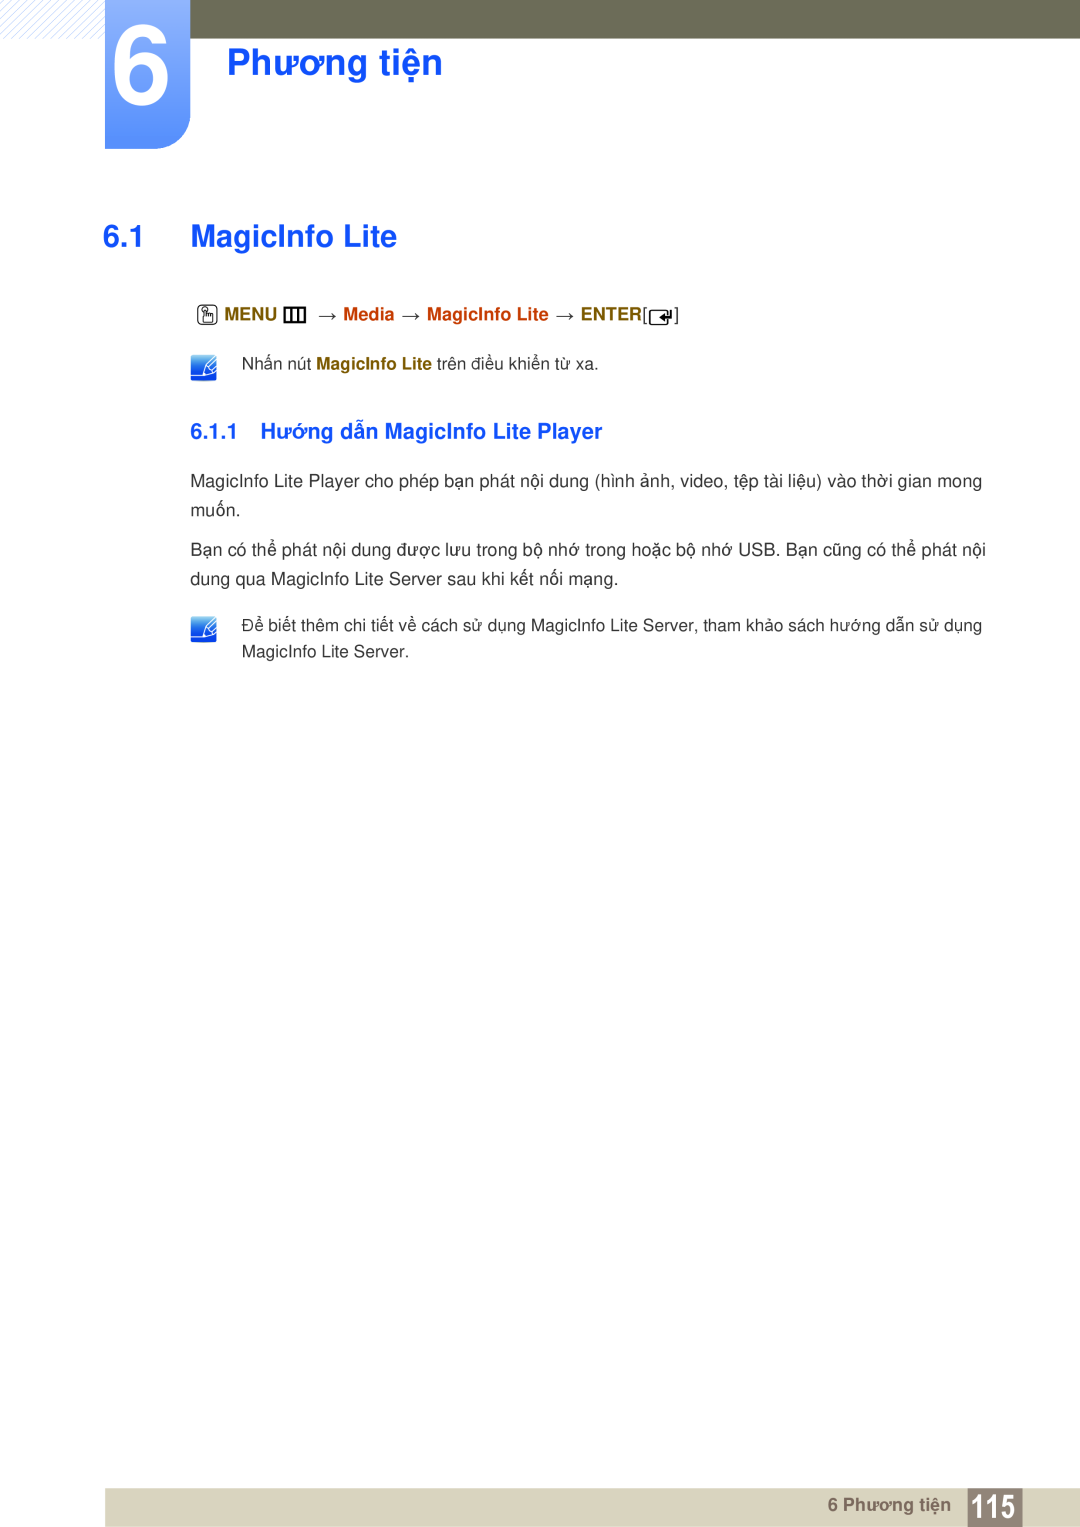 Samsung LH55MEPLGC/XY manual 6 Phương tiện, 6.1.1 Hướng dẫn MagicInfo Lite Player, O MENU m Media MagicInfo Lite ENTER 